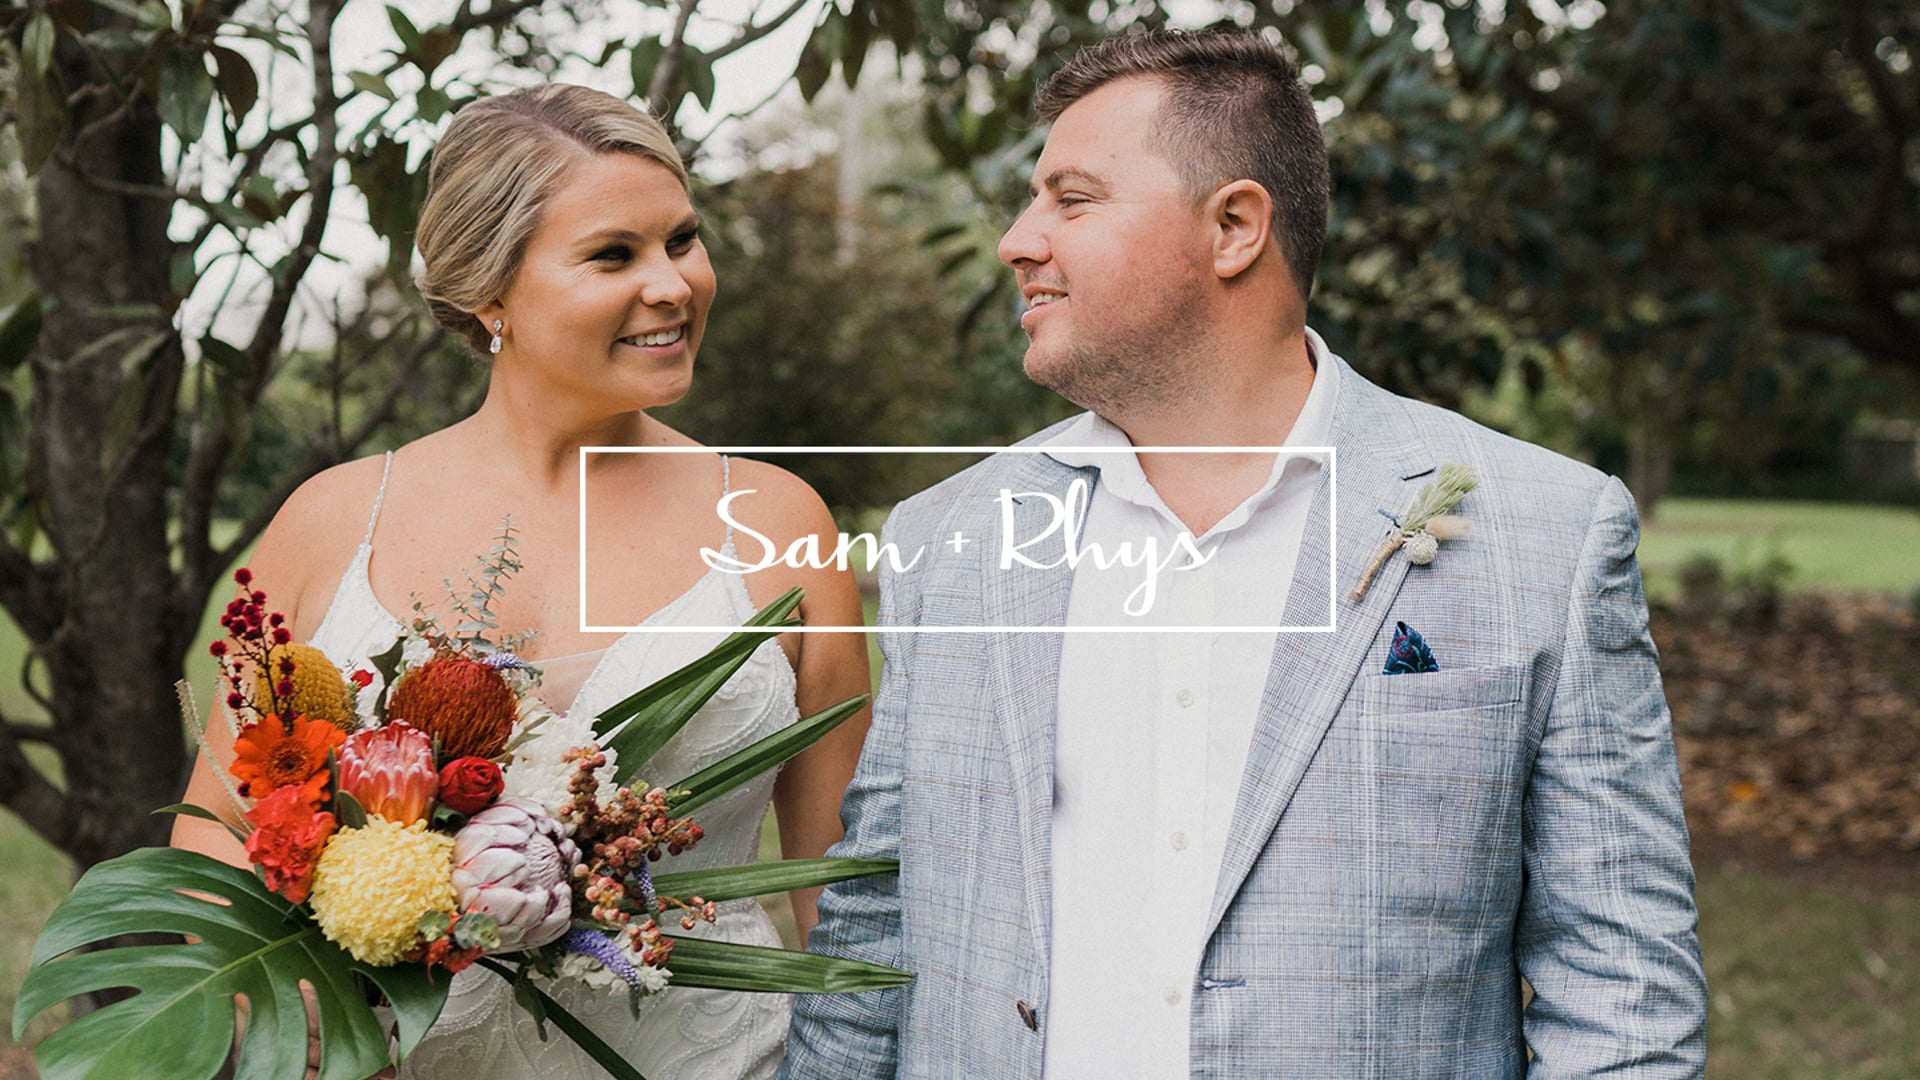 Samantha + Rhys // Wedding Highlights